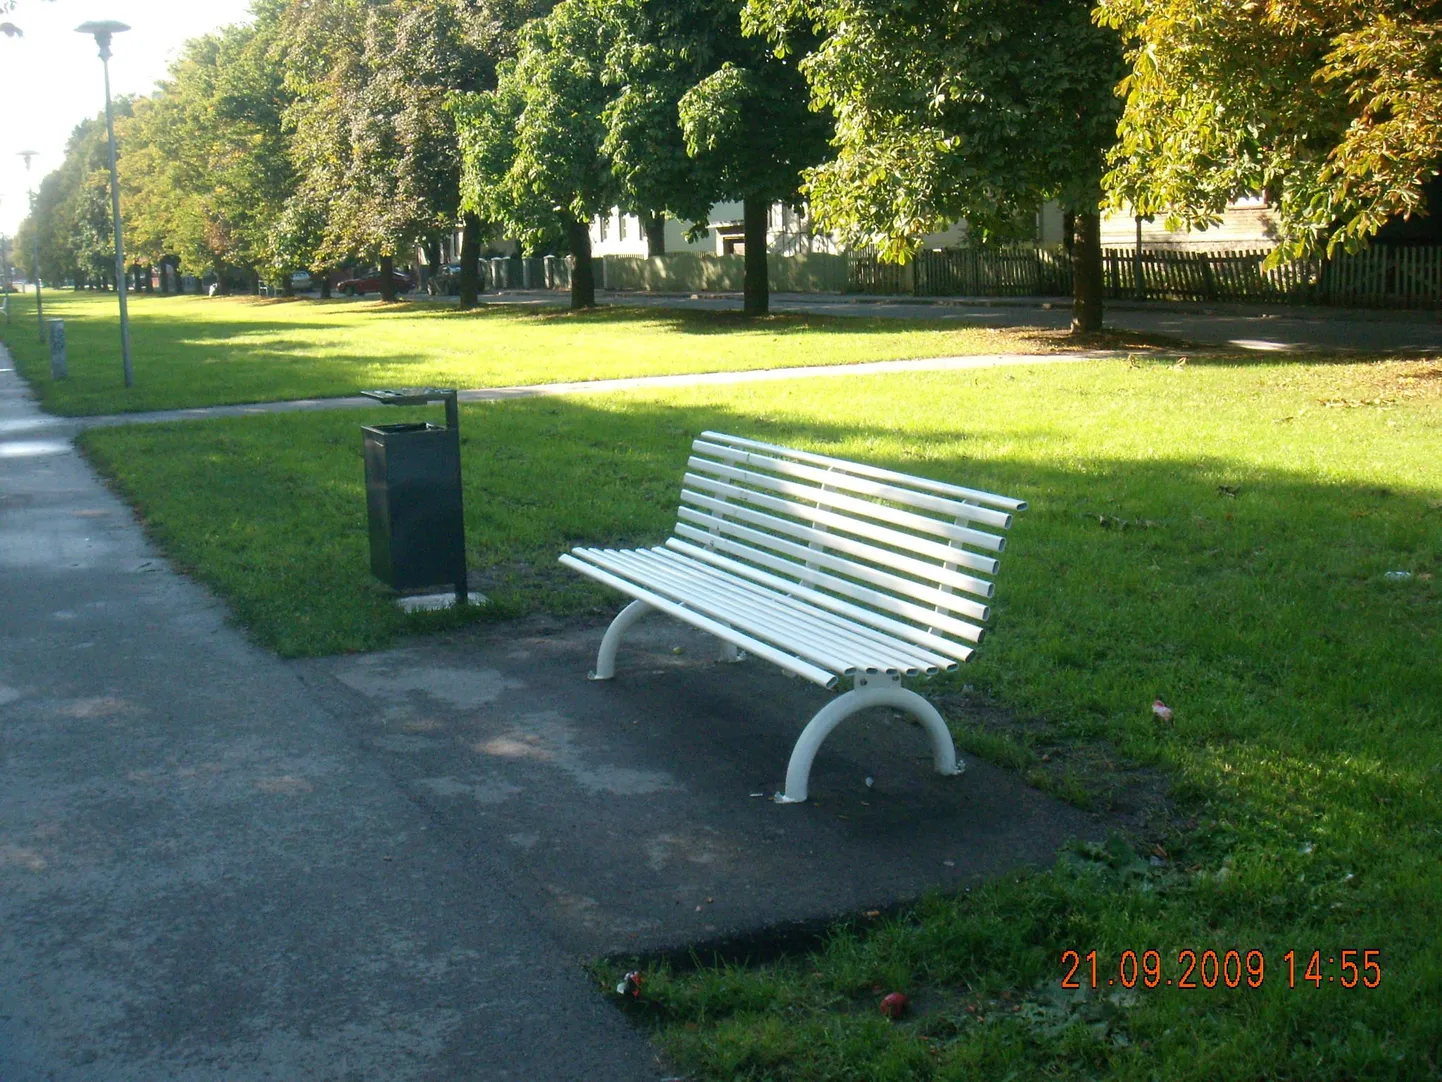 Скамейка в парке. Иллюстративный снимок.